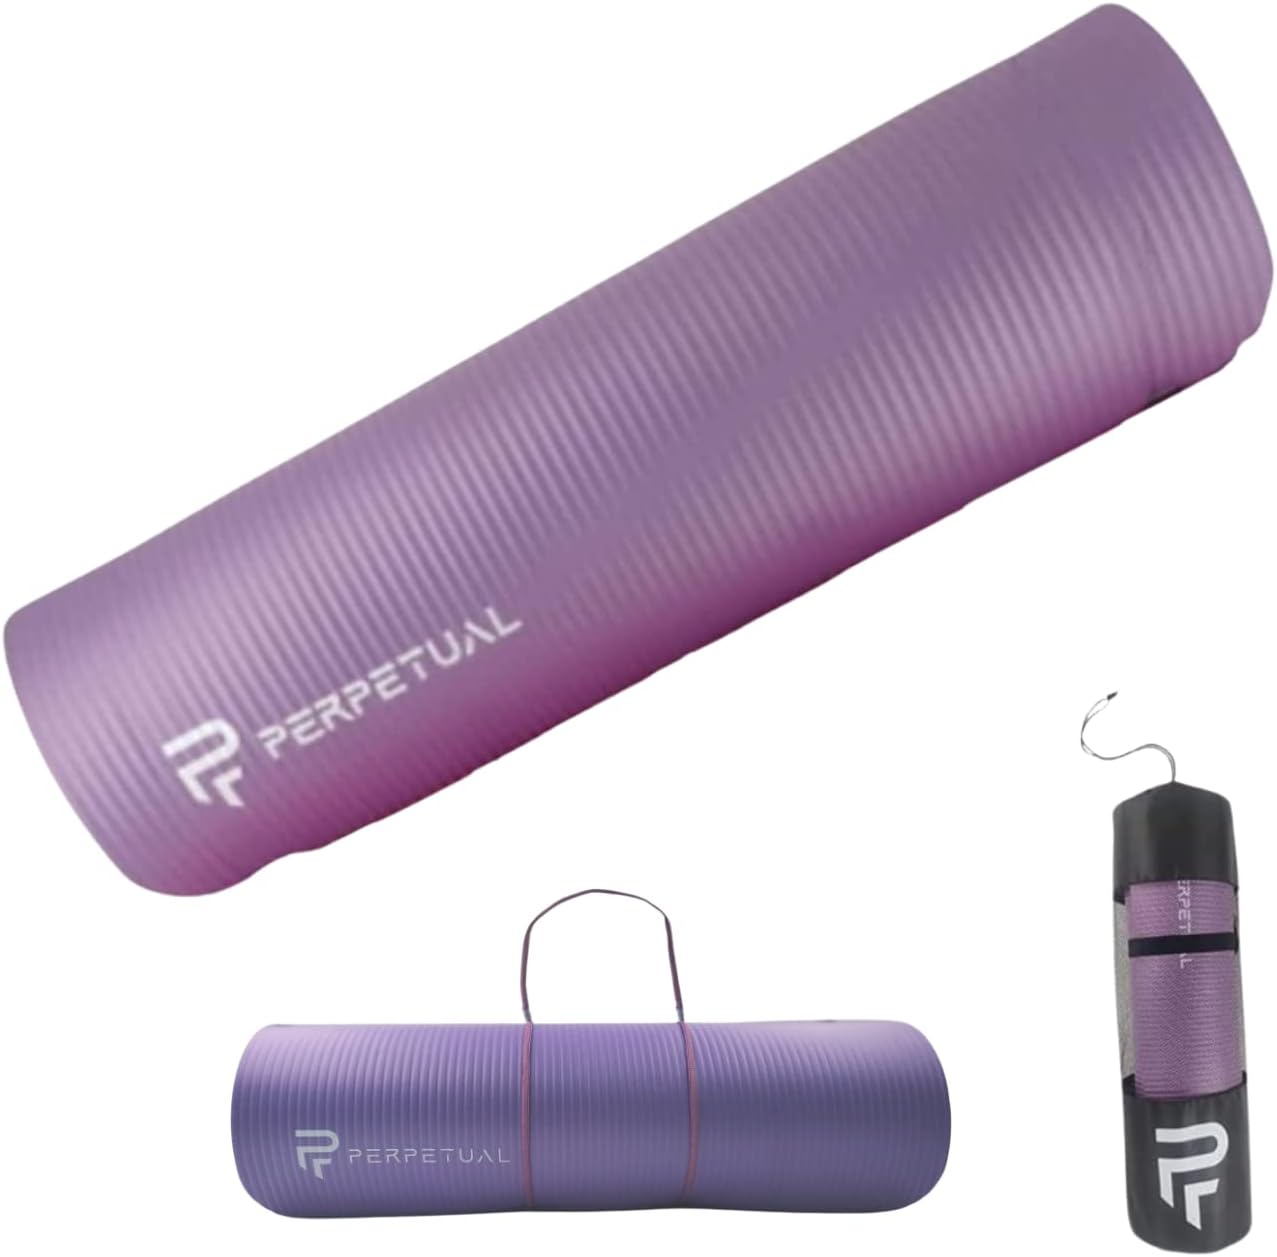 Esterilla De Yoga Y Pilates Antideslizante De 10mm Perpetual Con Correa Y Bolsa De Transporte - violeta - 